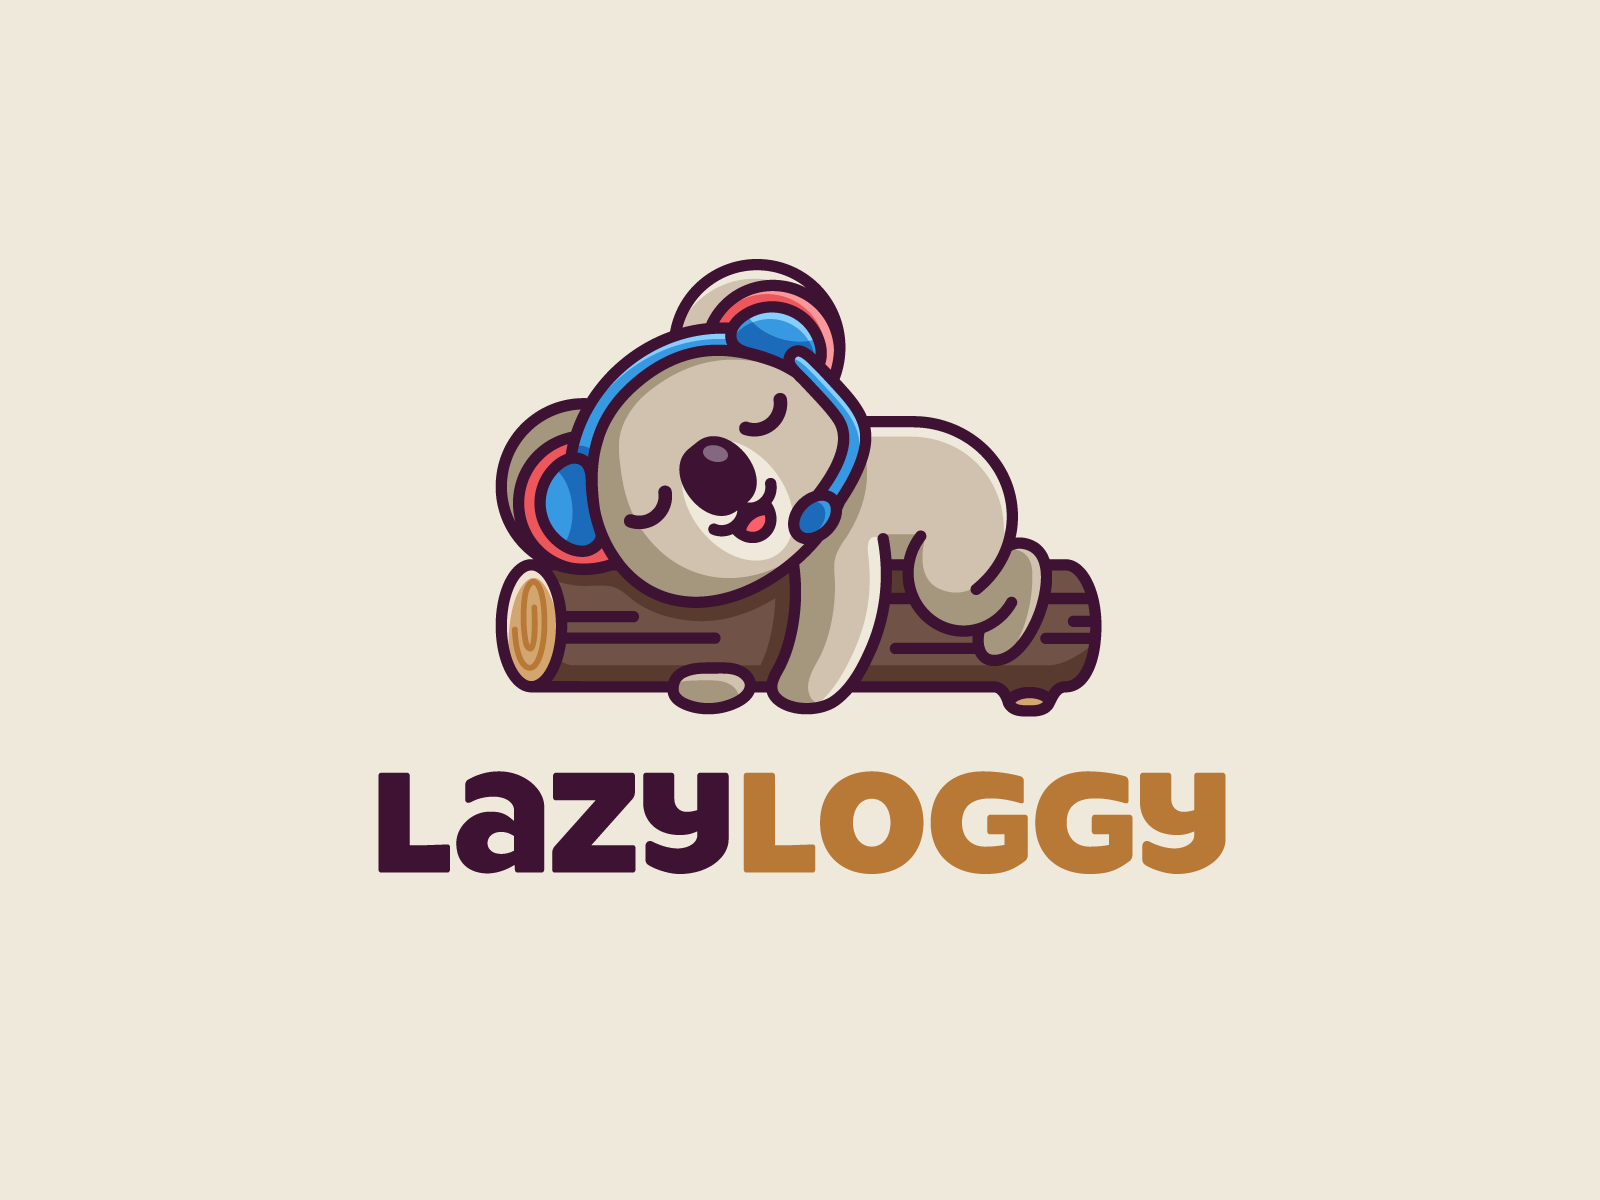 Lazy Koala by Alfrey Davilla | vaneltia on Dribbble